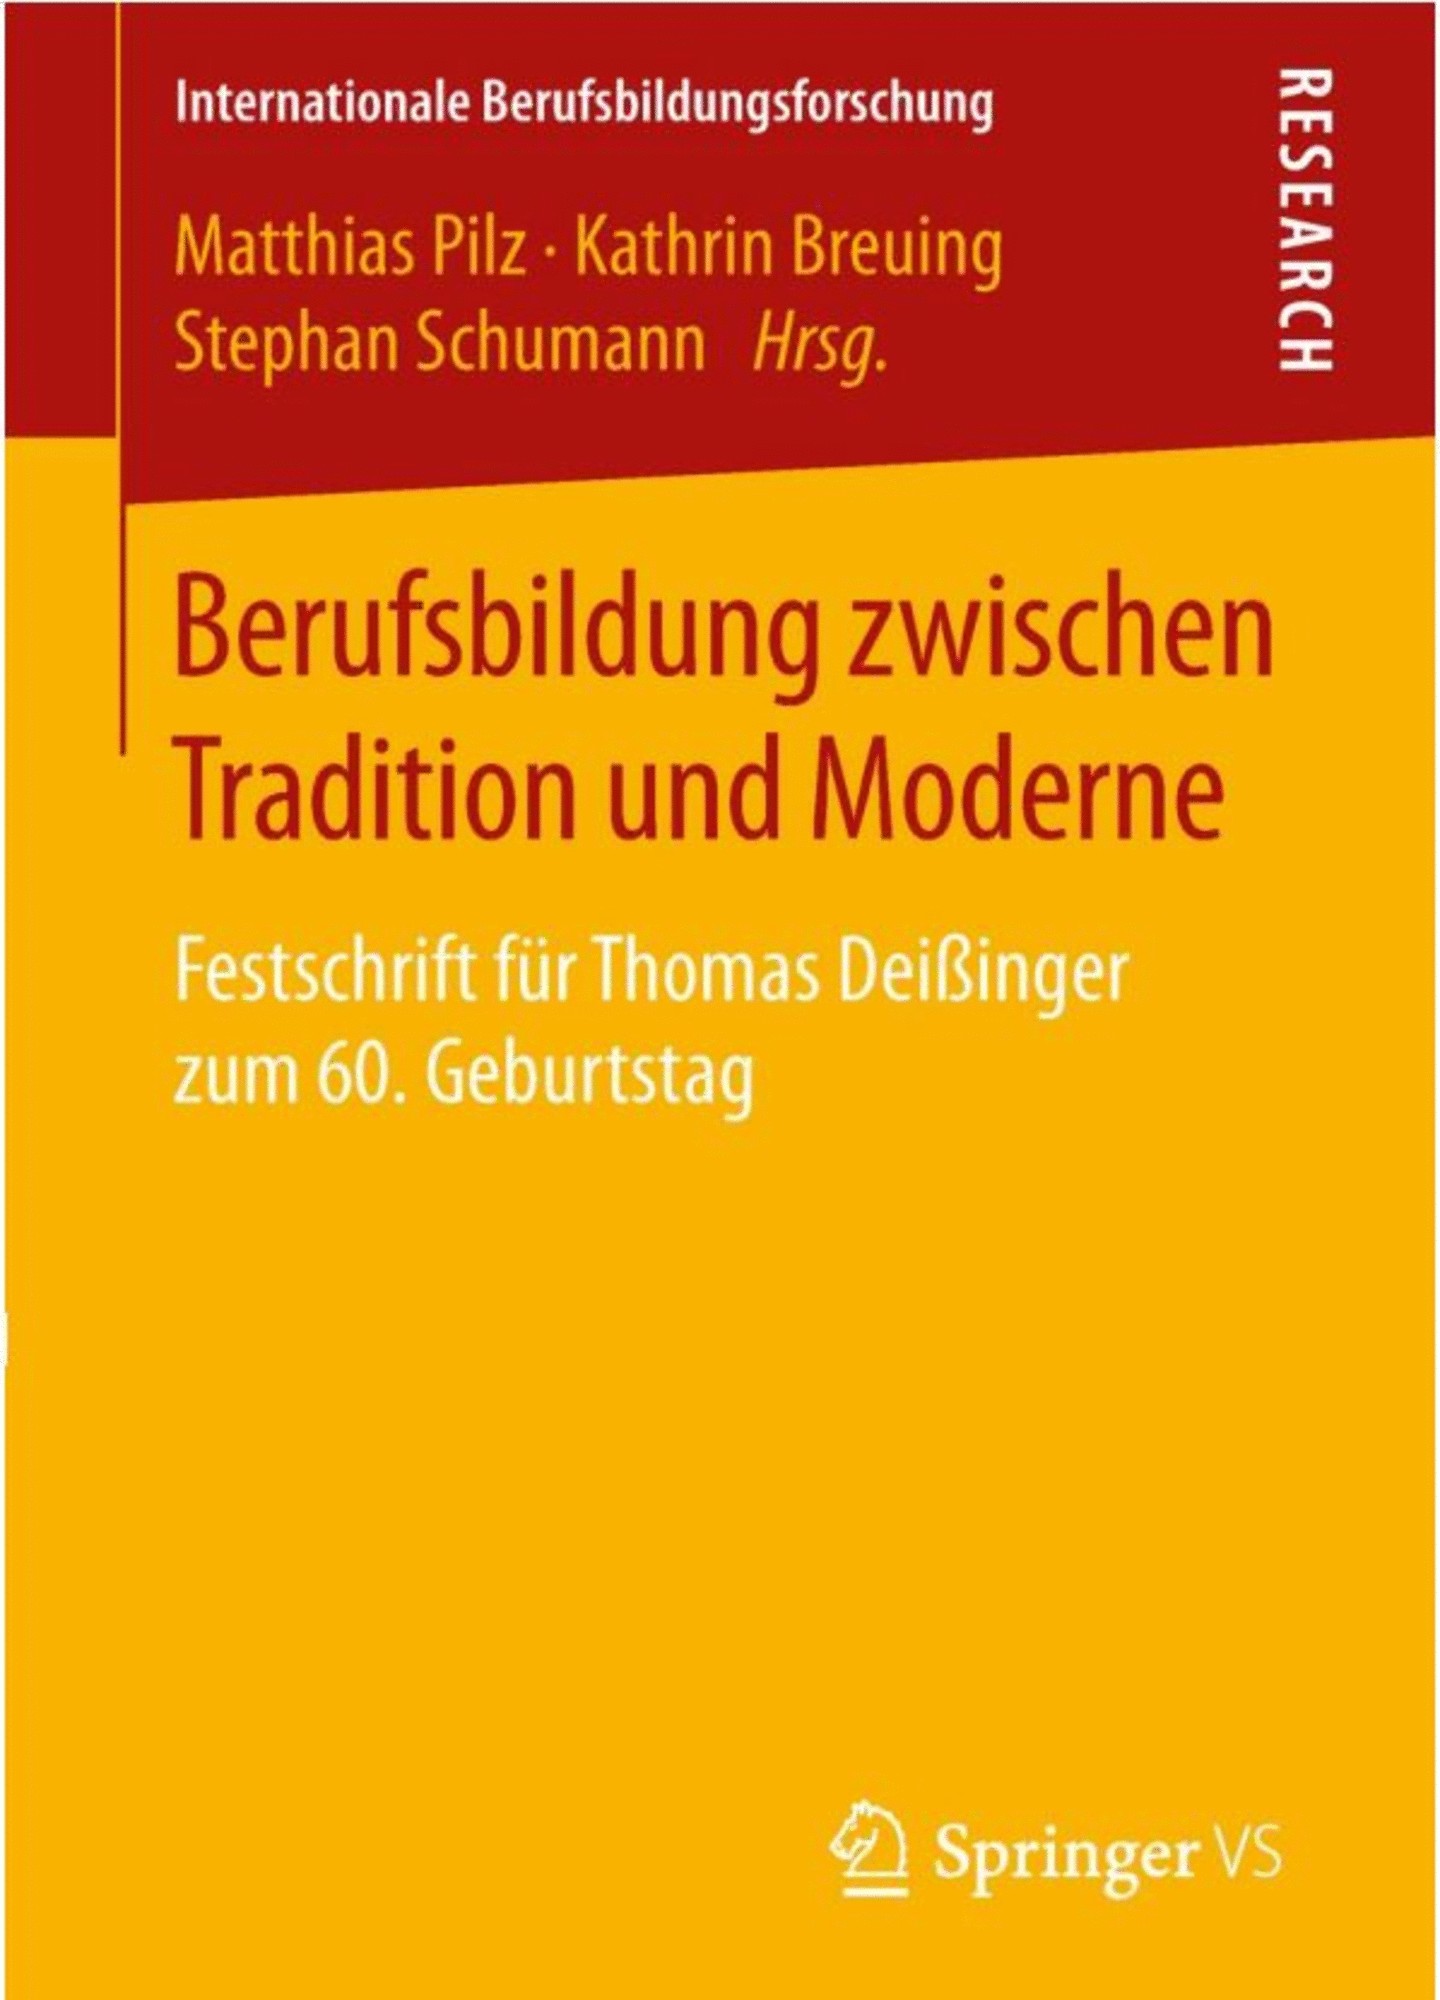 Berufsbildung zwischen Tradition und Moderne - Festschrift für Thomas Deißinger zum 60. Geburtstag